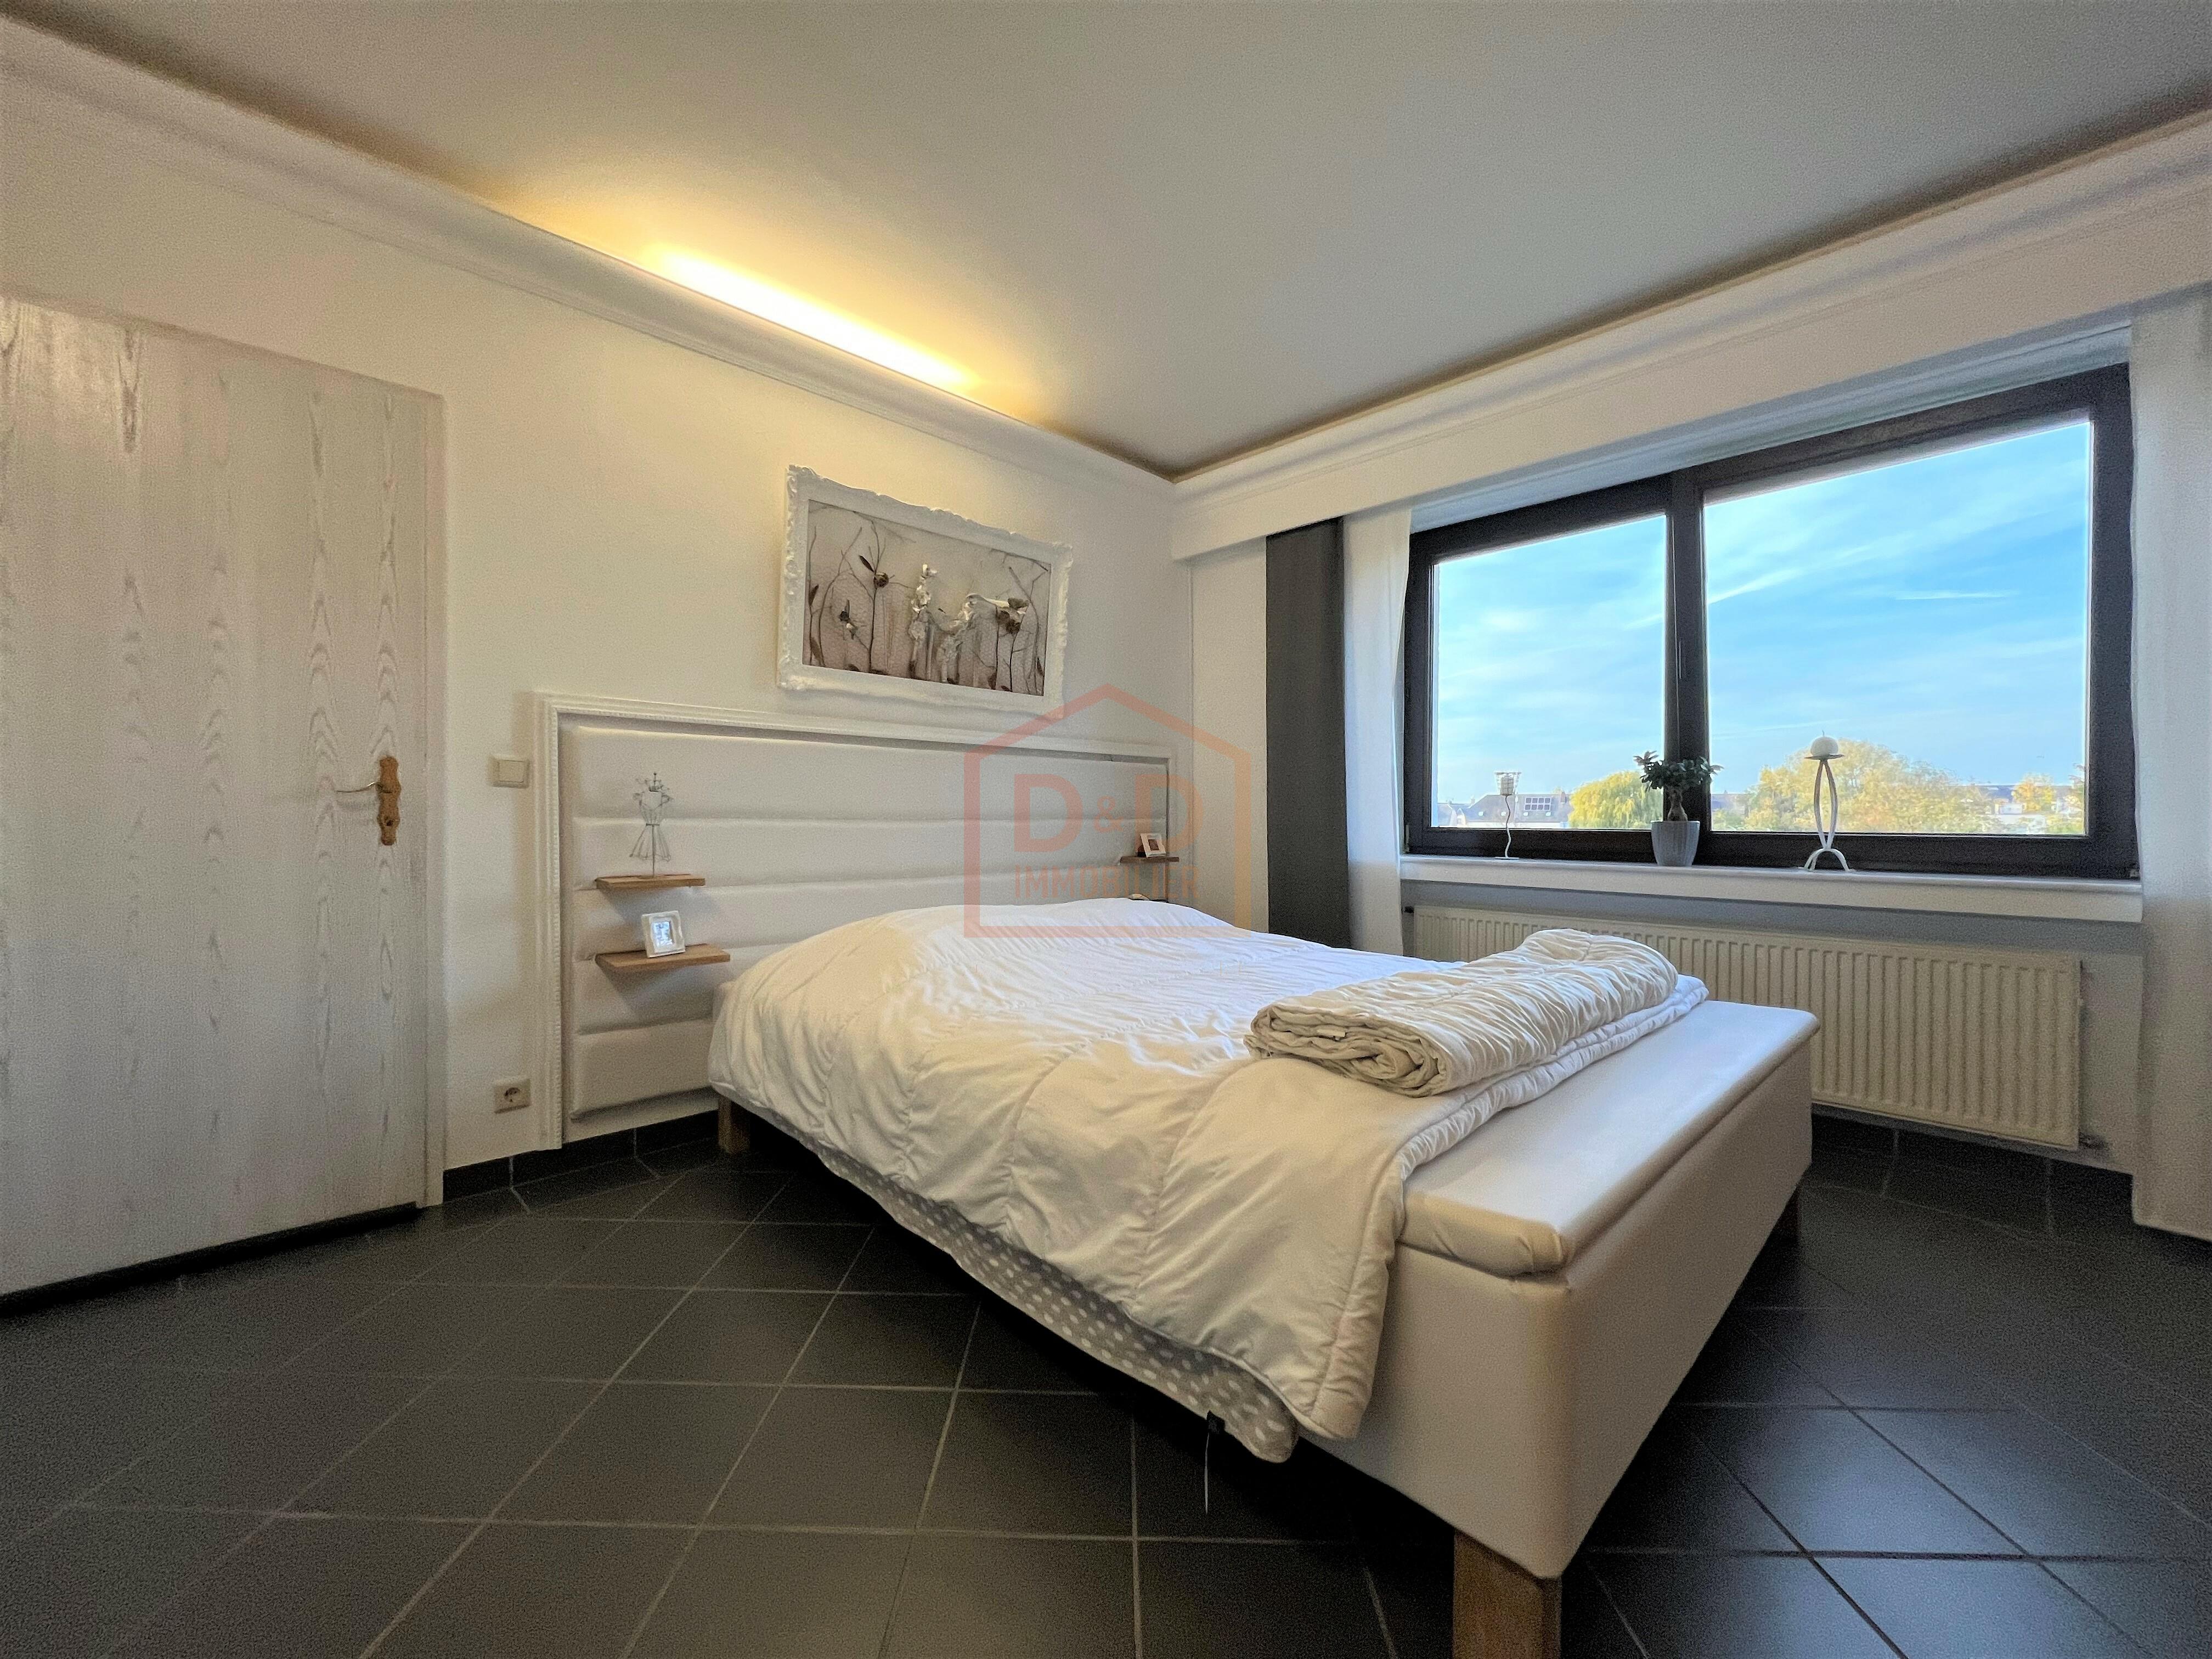 Appartement à Bettembourg, 125 m², 2 chambres, 1 salle de bain, 2 garages, 795 000 €